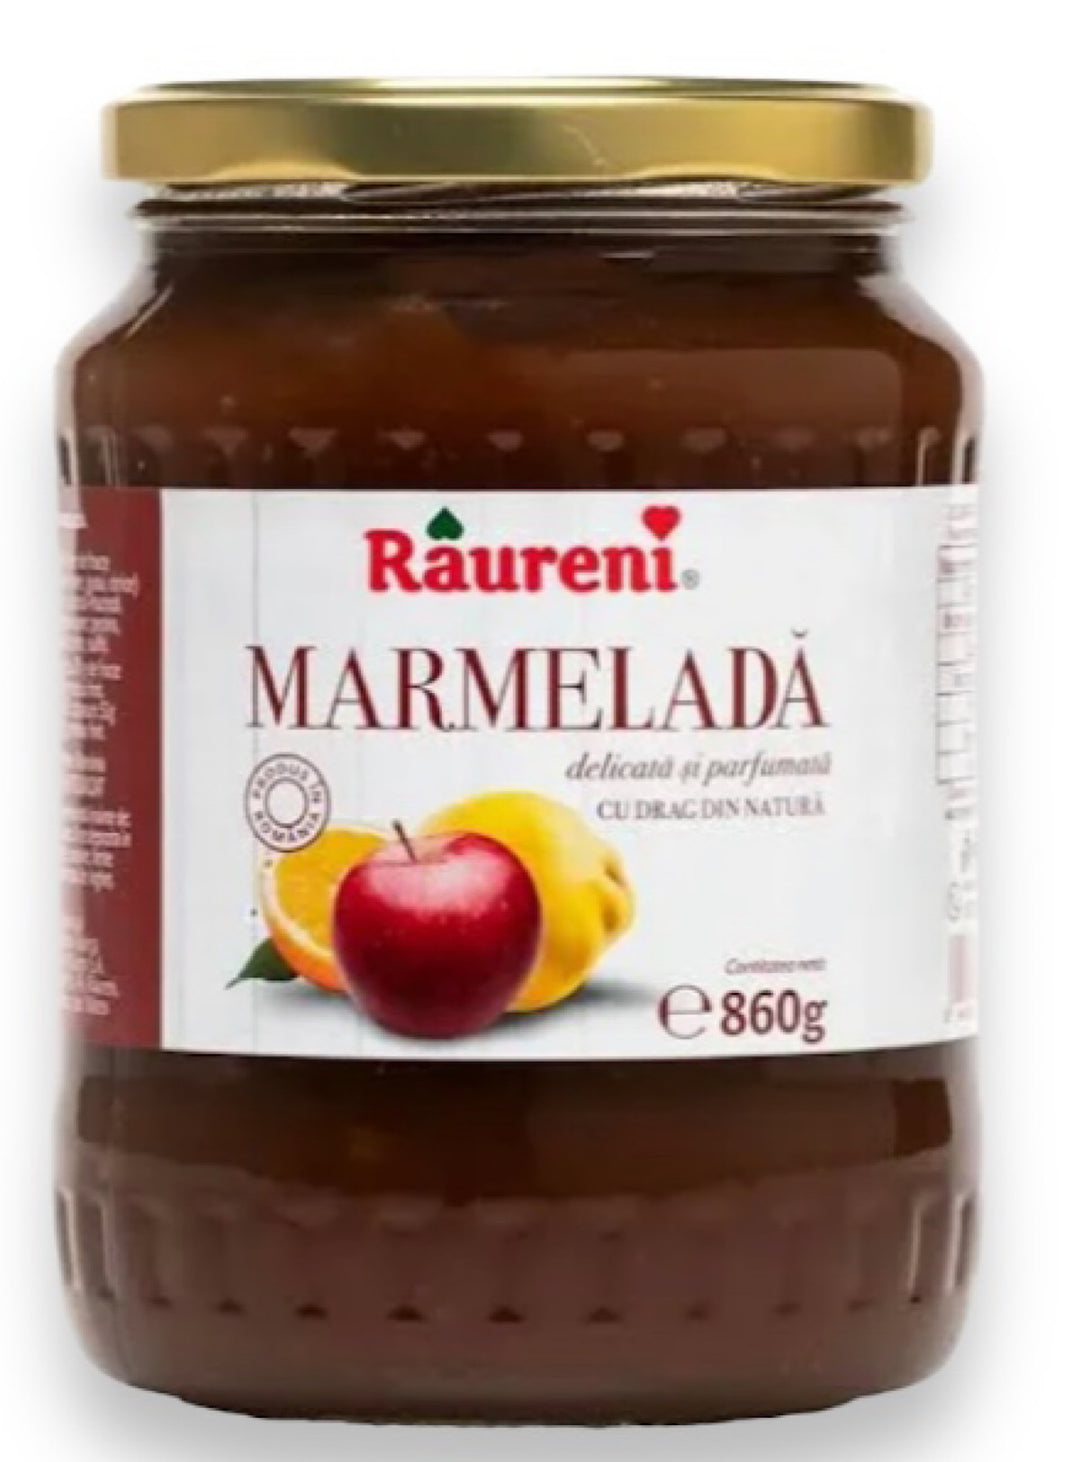 Fruit MARMELADA - Râurent - 860g